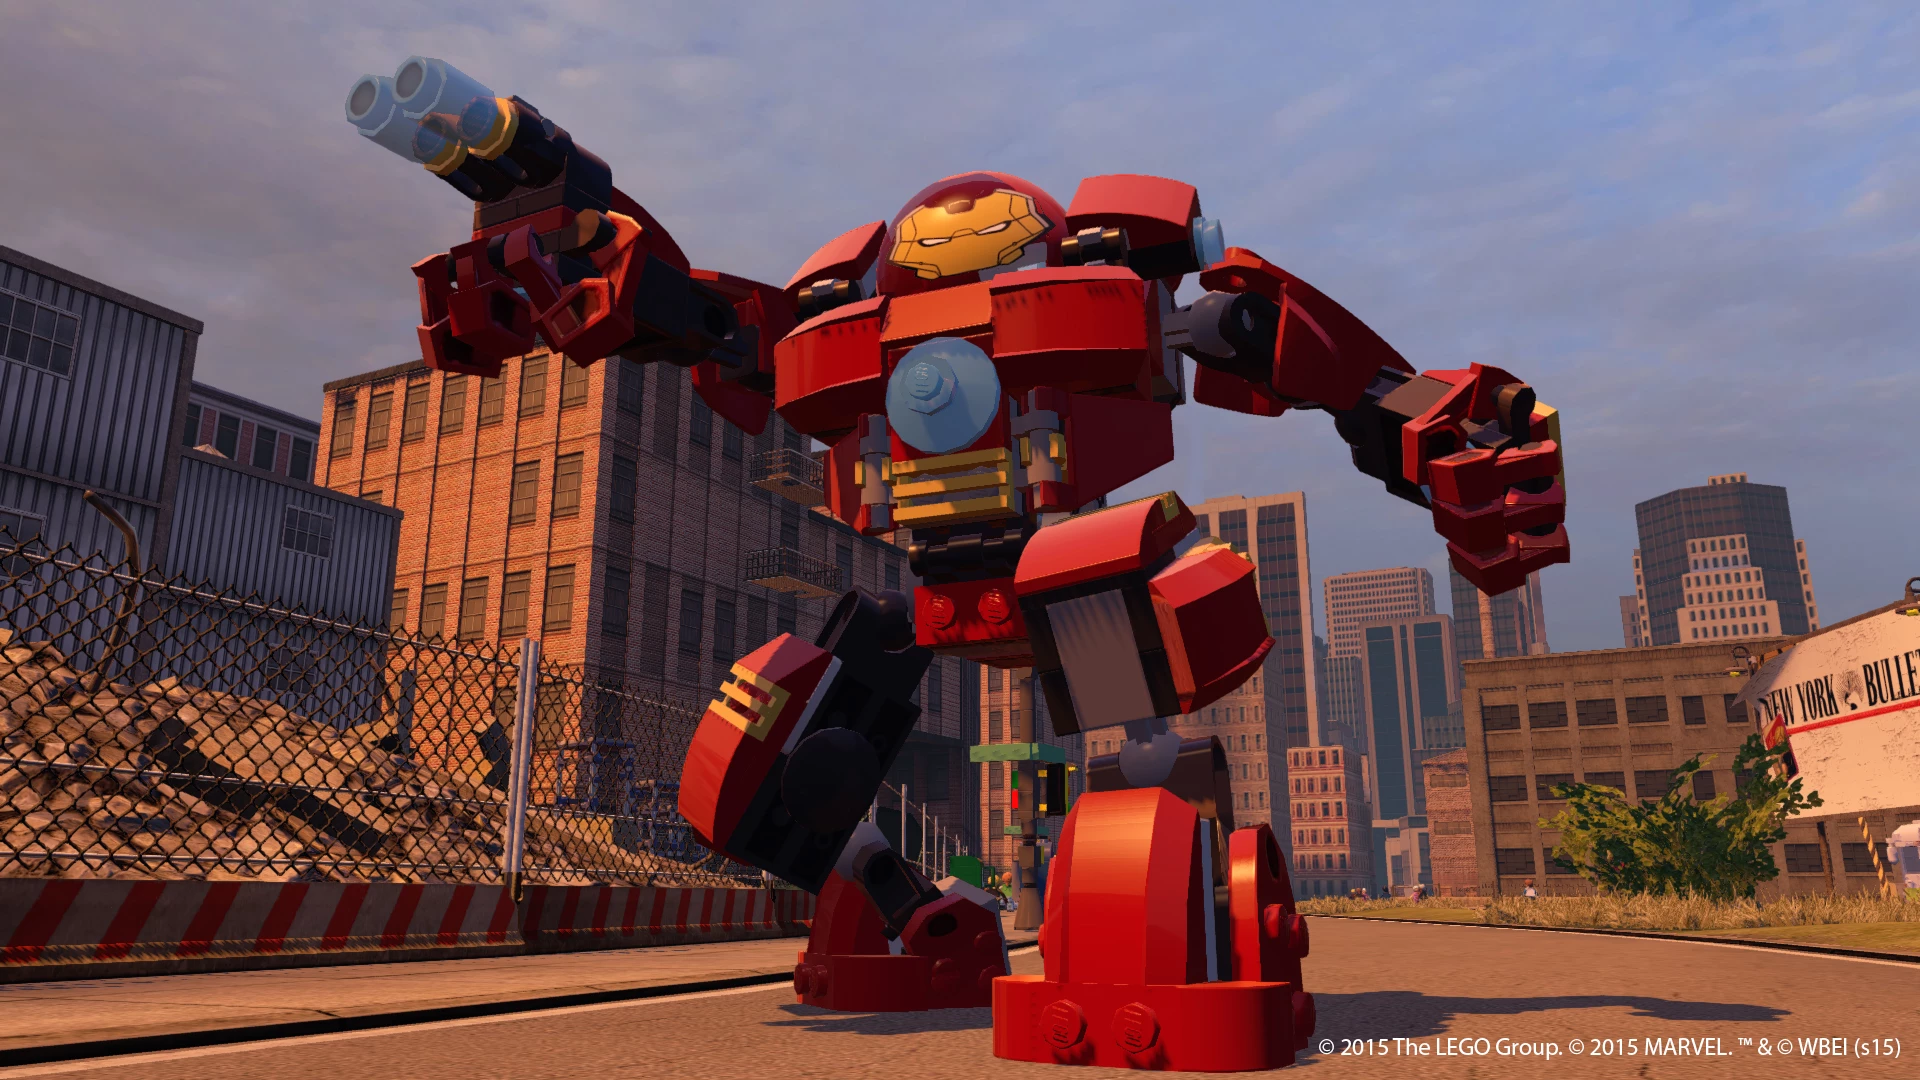 LEGO Marvel Avengers voor de PlayStation 4 kopen op nedgame.nl